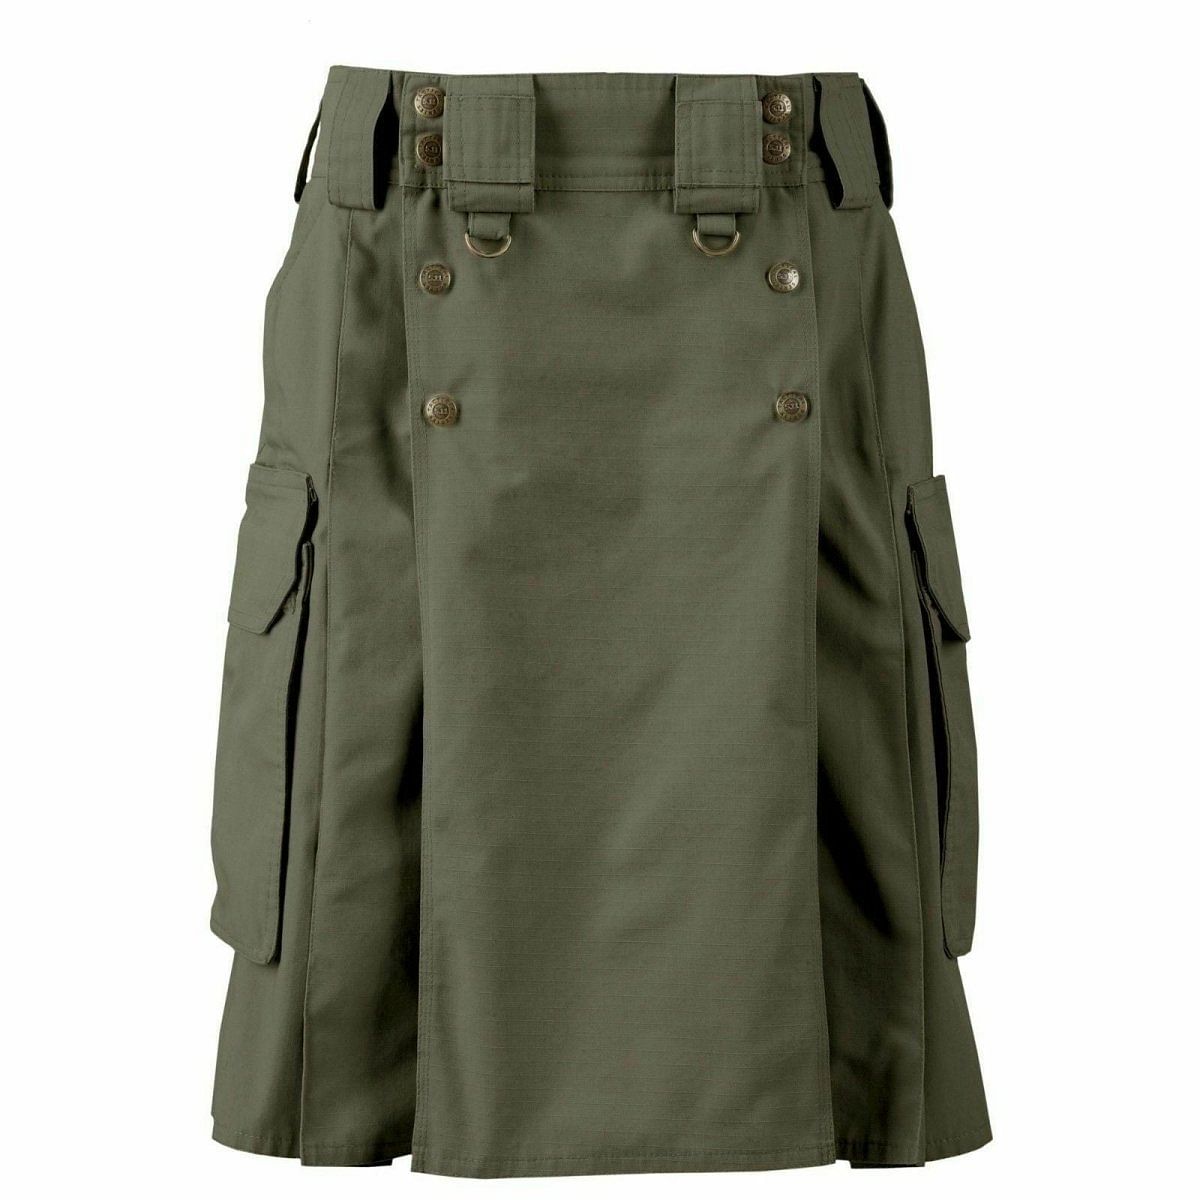 Army Green Combat Cargo Uniform Battle Utility Kilt Combat Duty Kilt Unique Style - #Kilts Boutique#